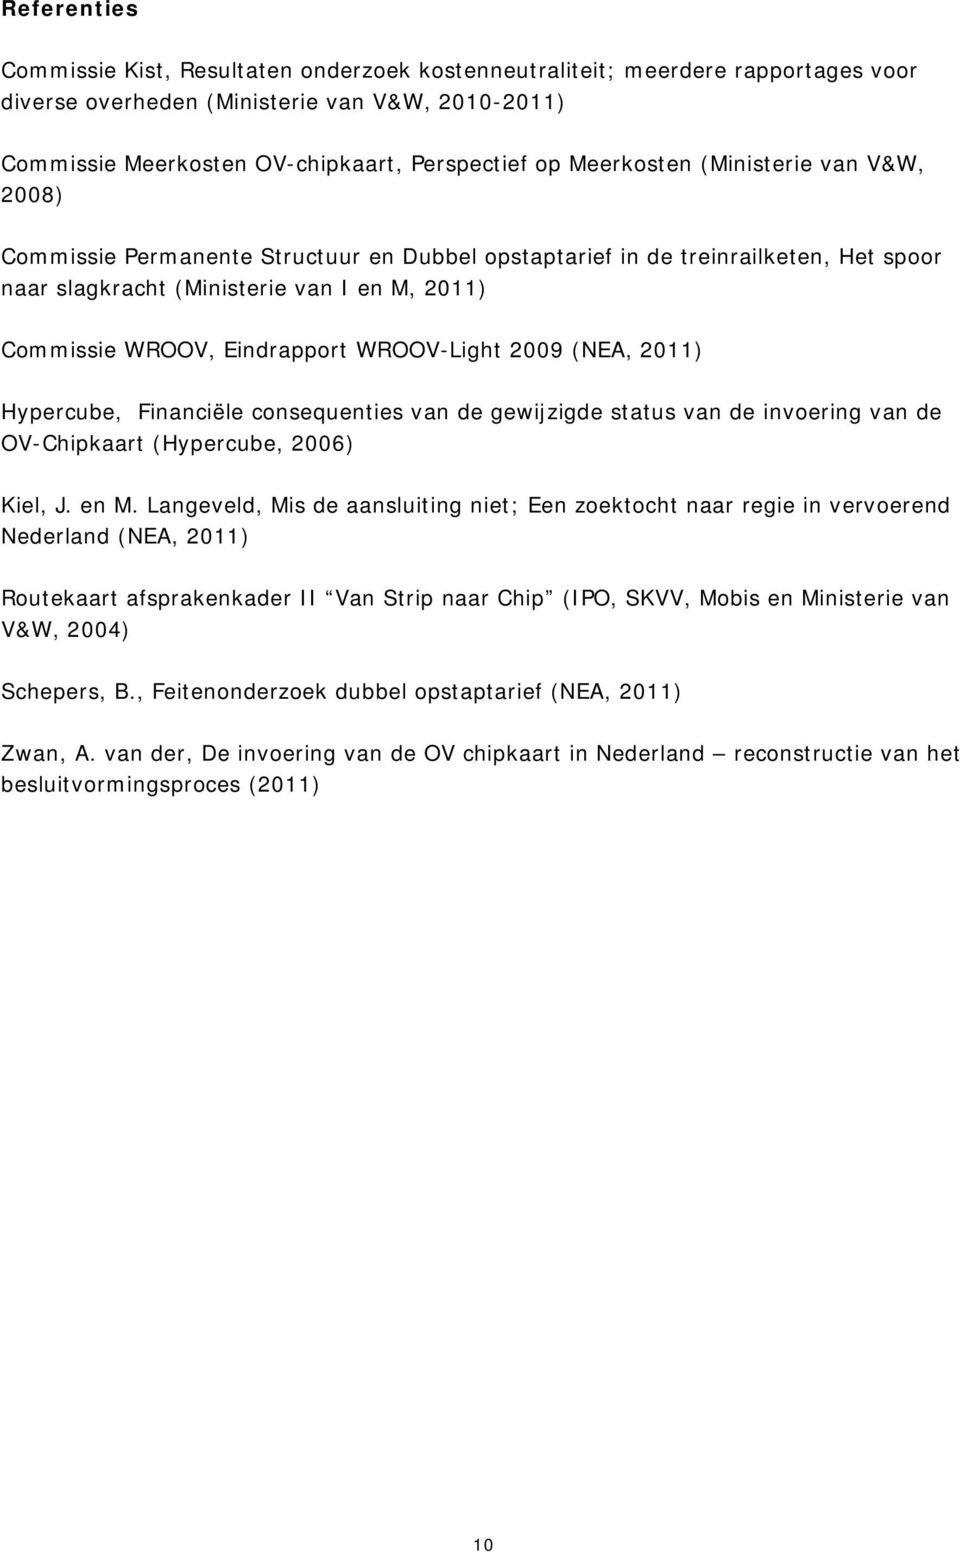 WROOV-Light 2009 (NEA, 2011) Hypercube, Financiële consequenties van de gewijzigde status van de invoering van de OV-Chipkaart (Hypercube, 2006) Kiel, J. en M.